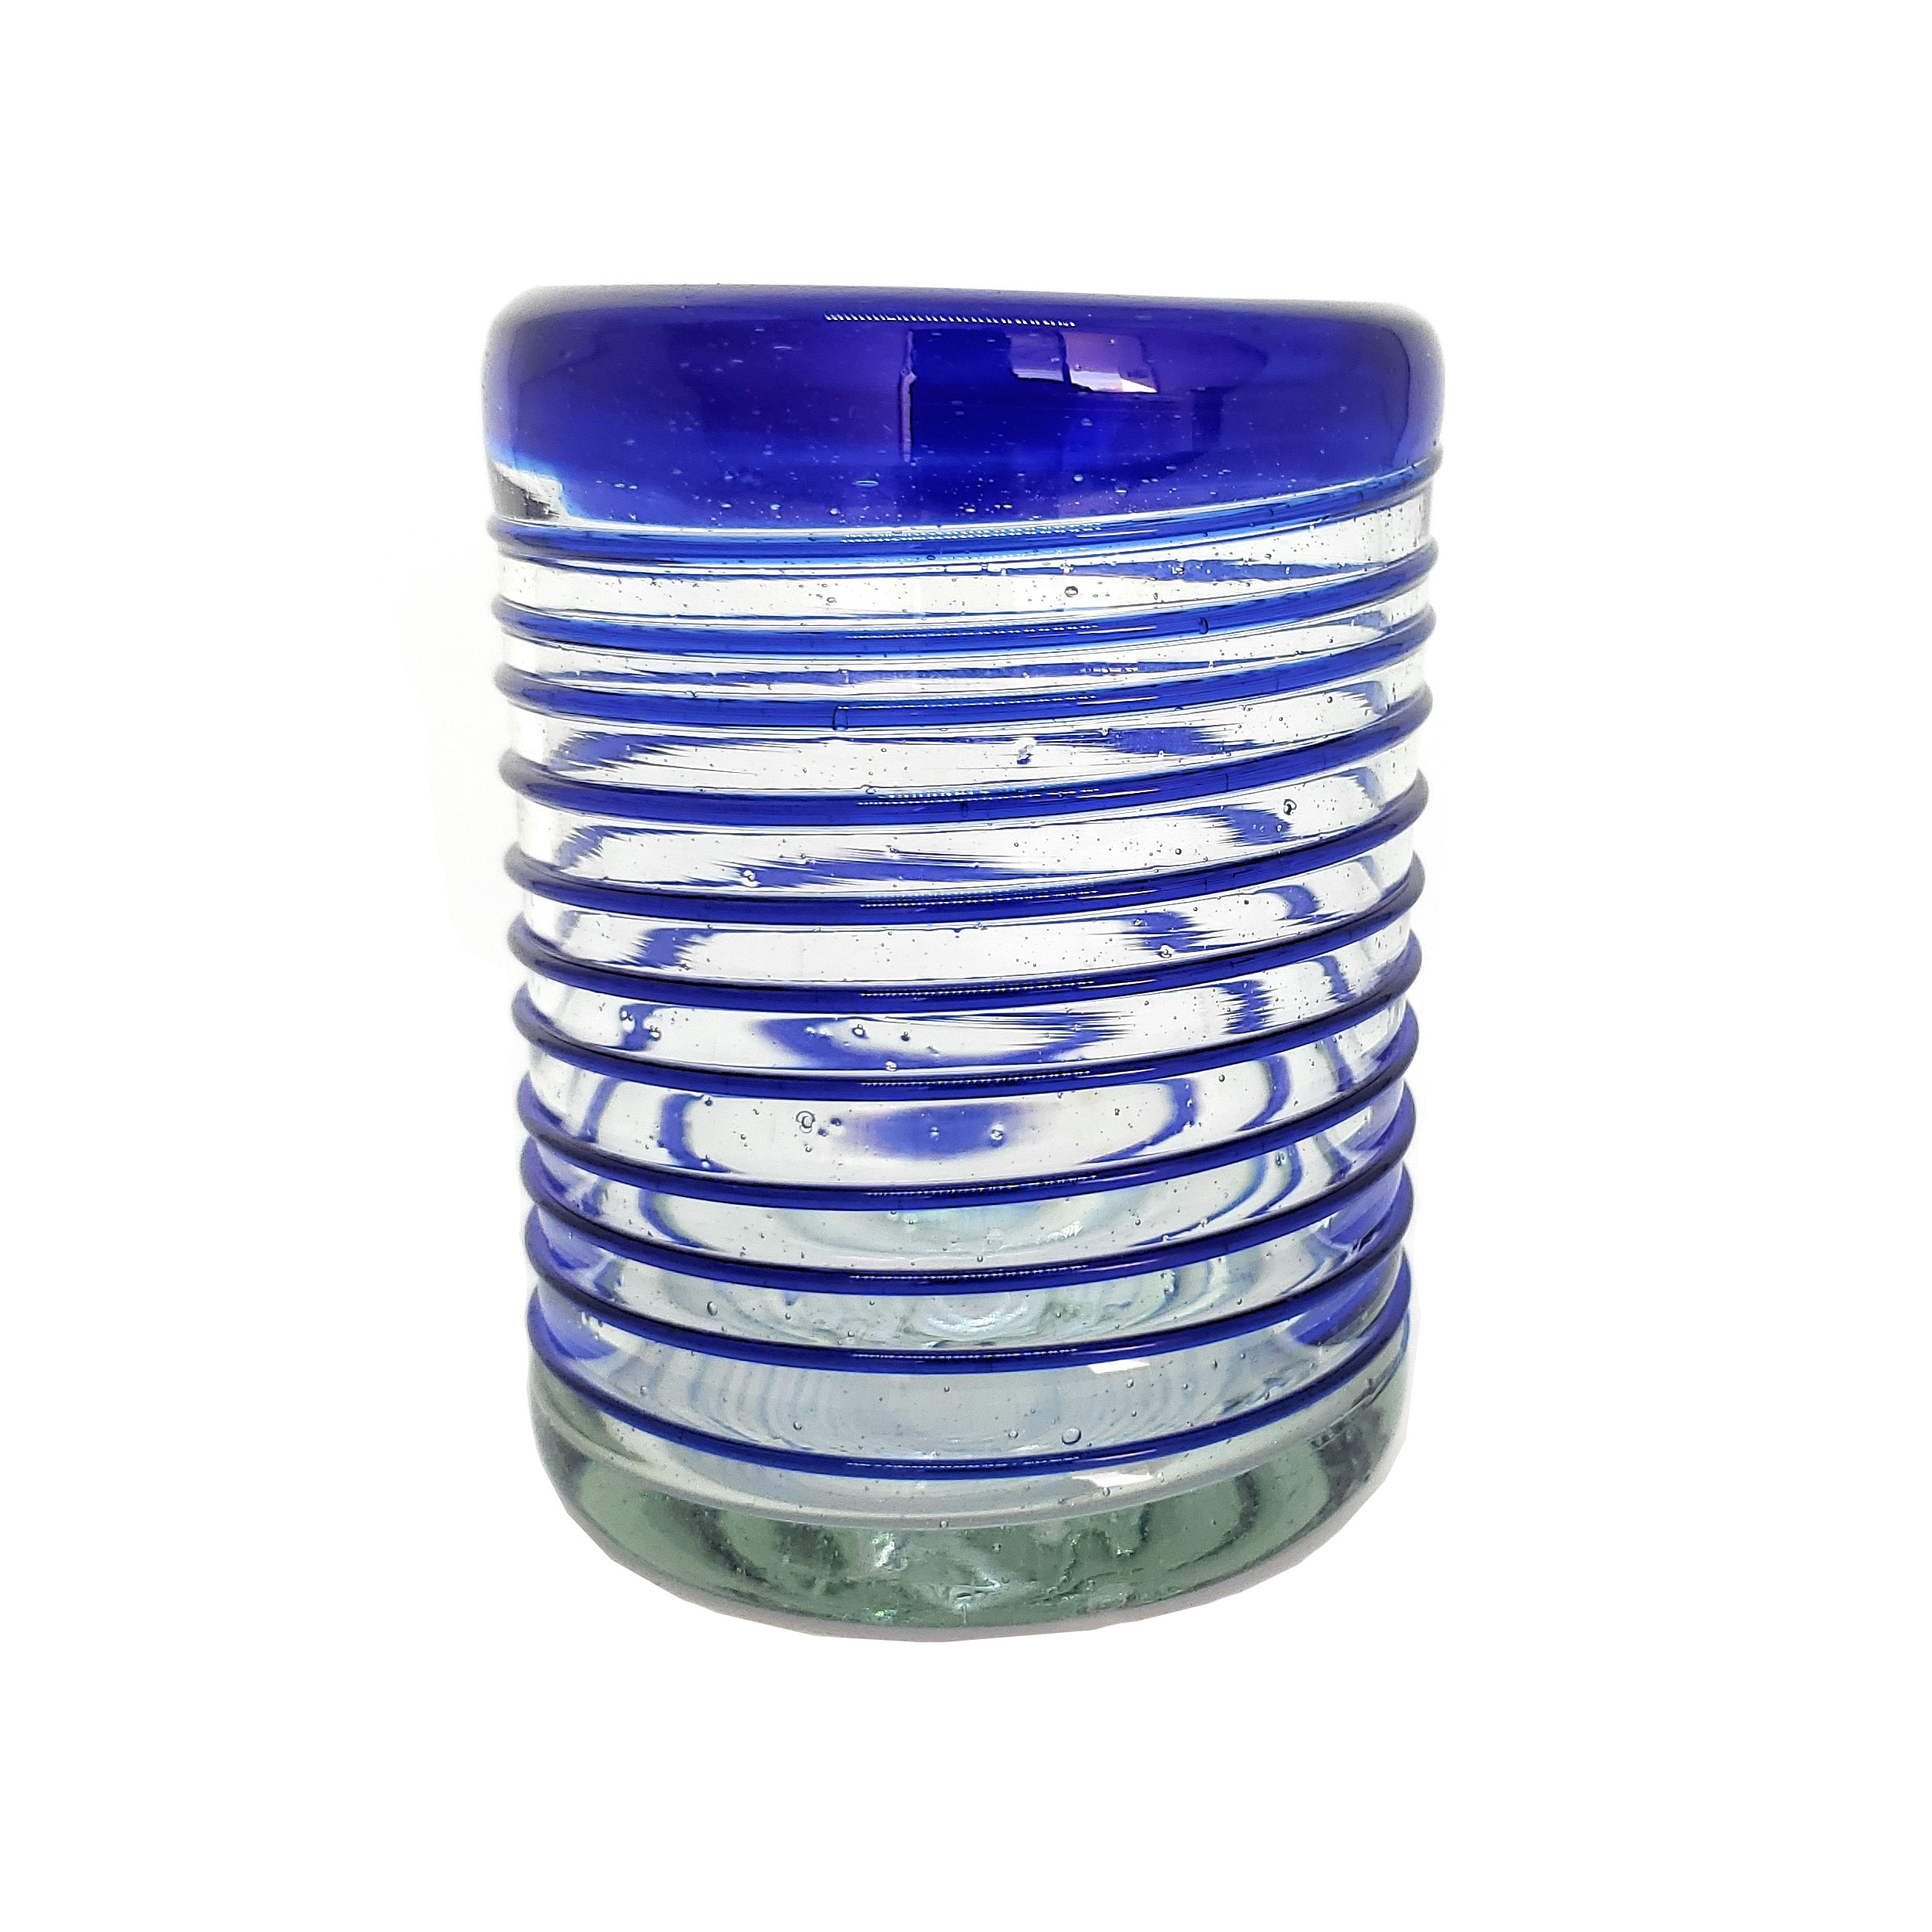 Ofertas / vasos chicos con espiral azul cobalto / �ste festivo juego de vasos es ideal para tomar leche con galletas o beber limonada en un d�a caluroso.